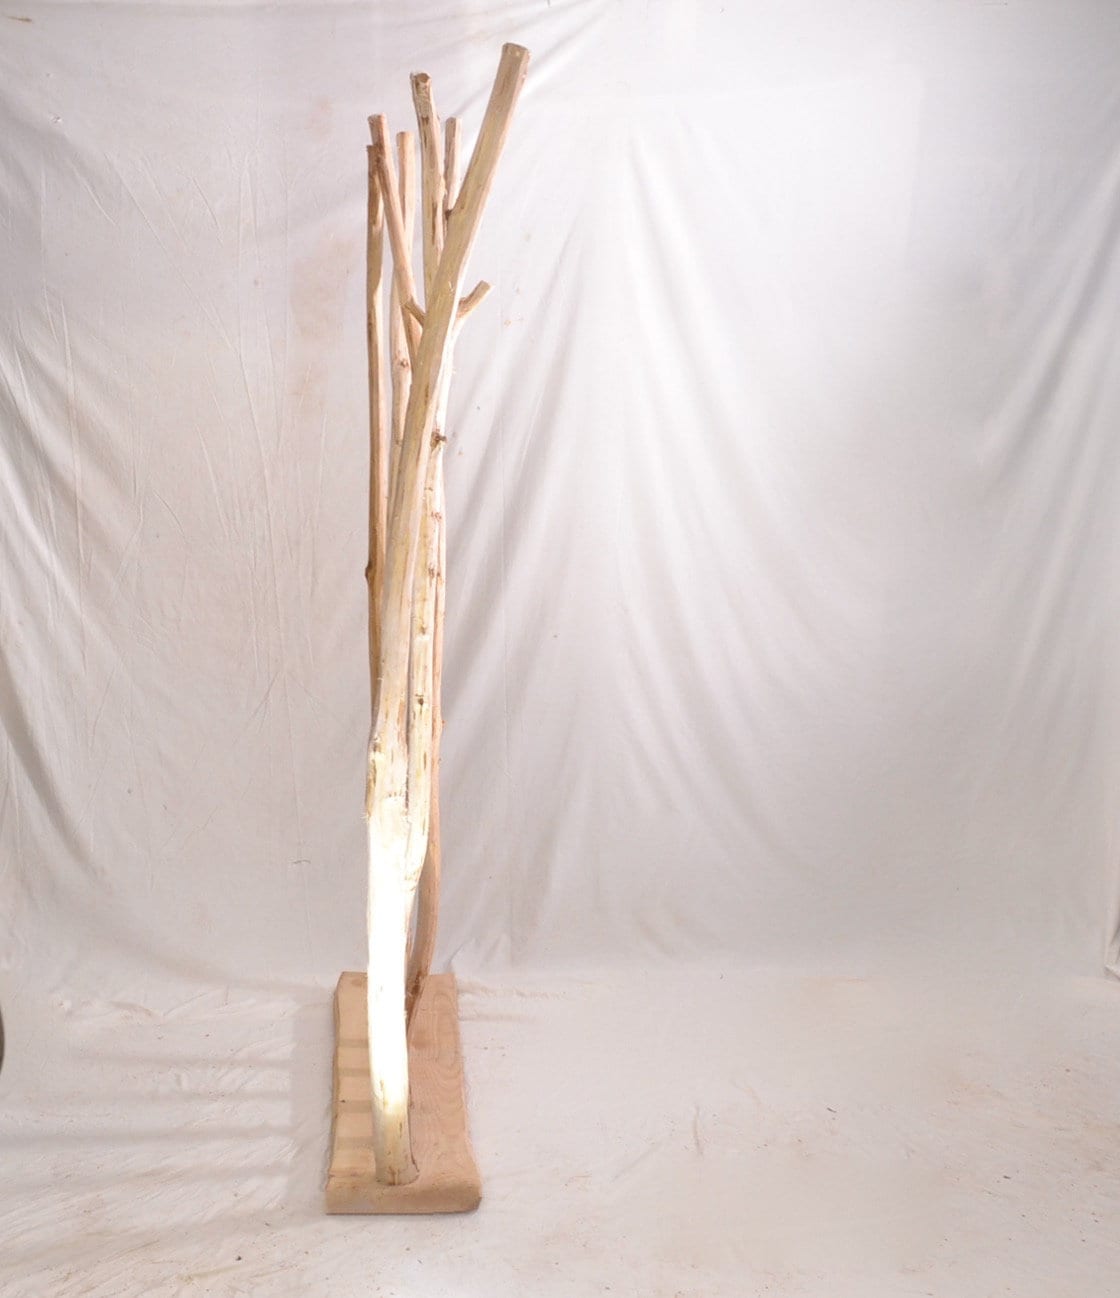 Séparateur de pièce en bois, brise vue, paravent en bois avec des branches